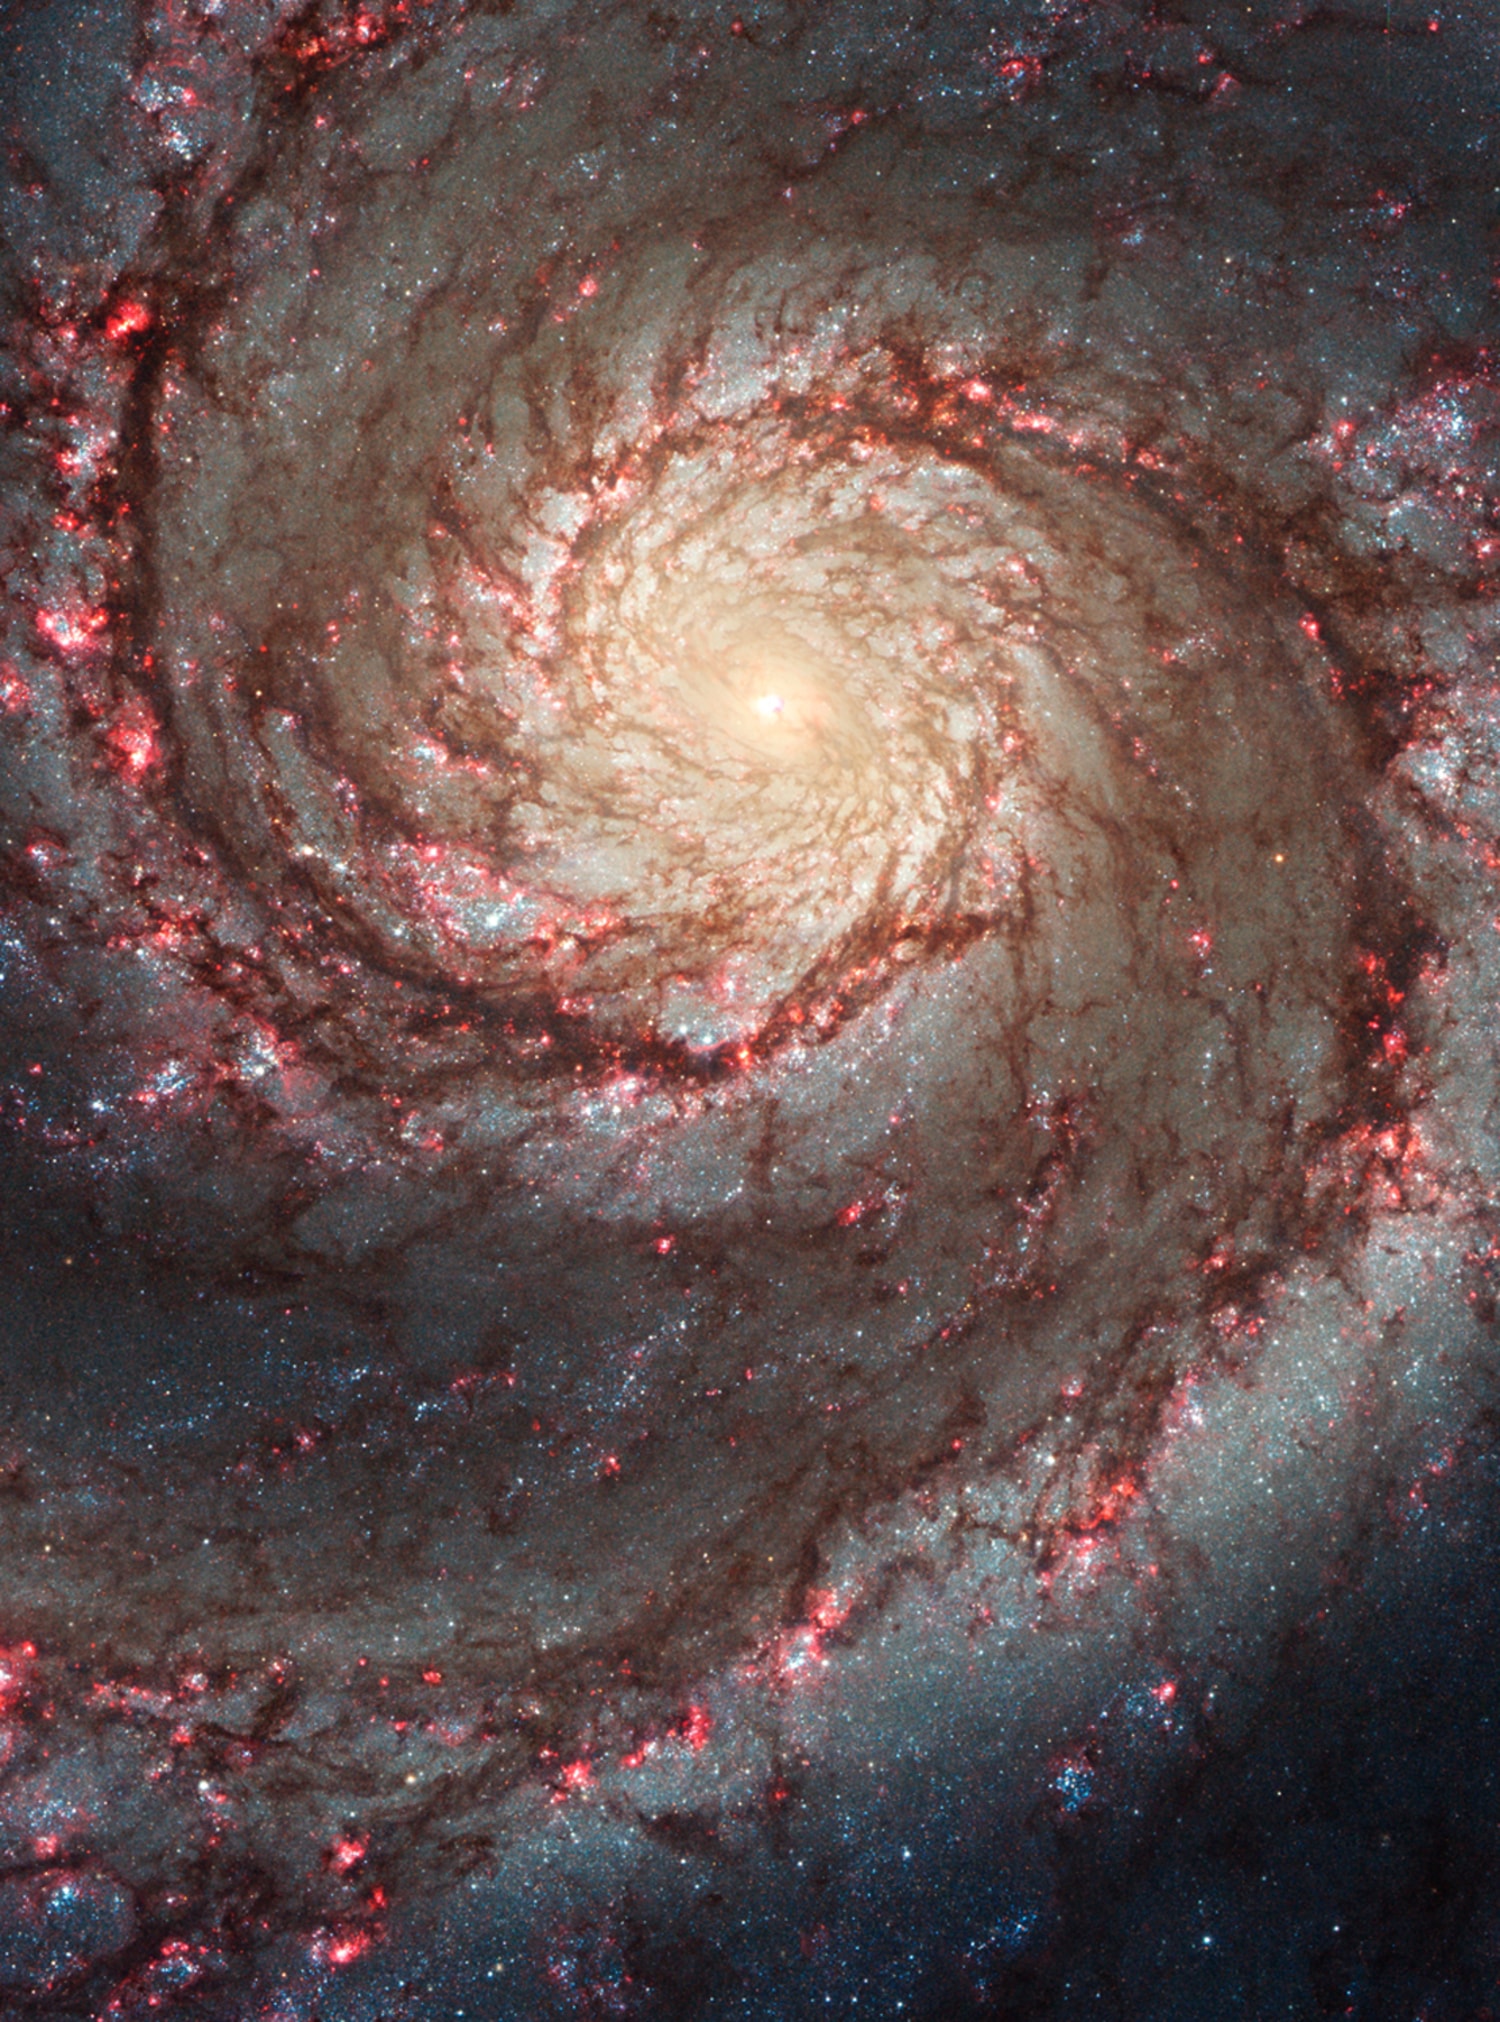 NASA shares new views of galaxies